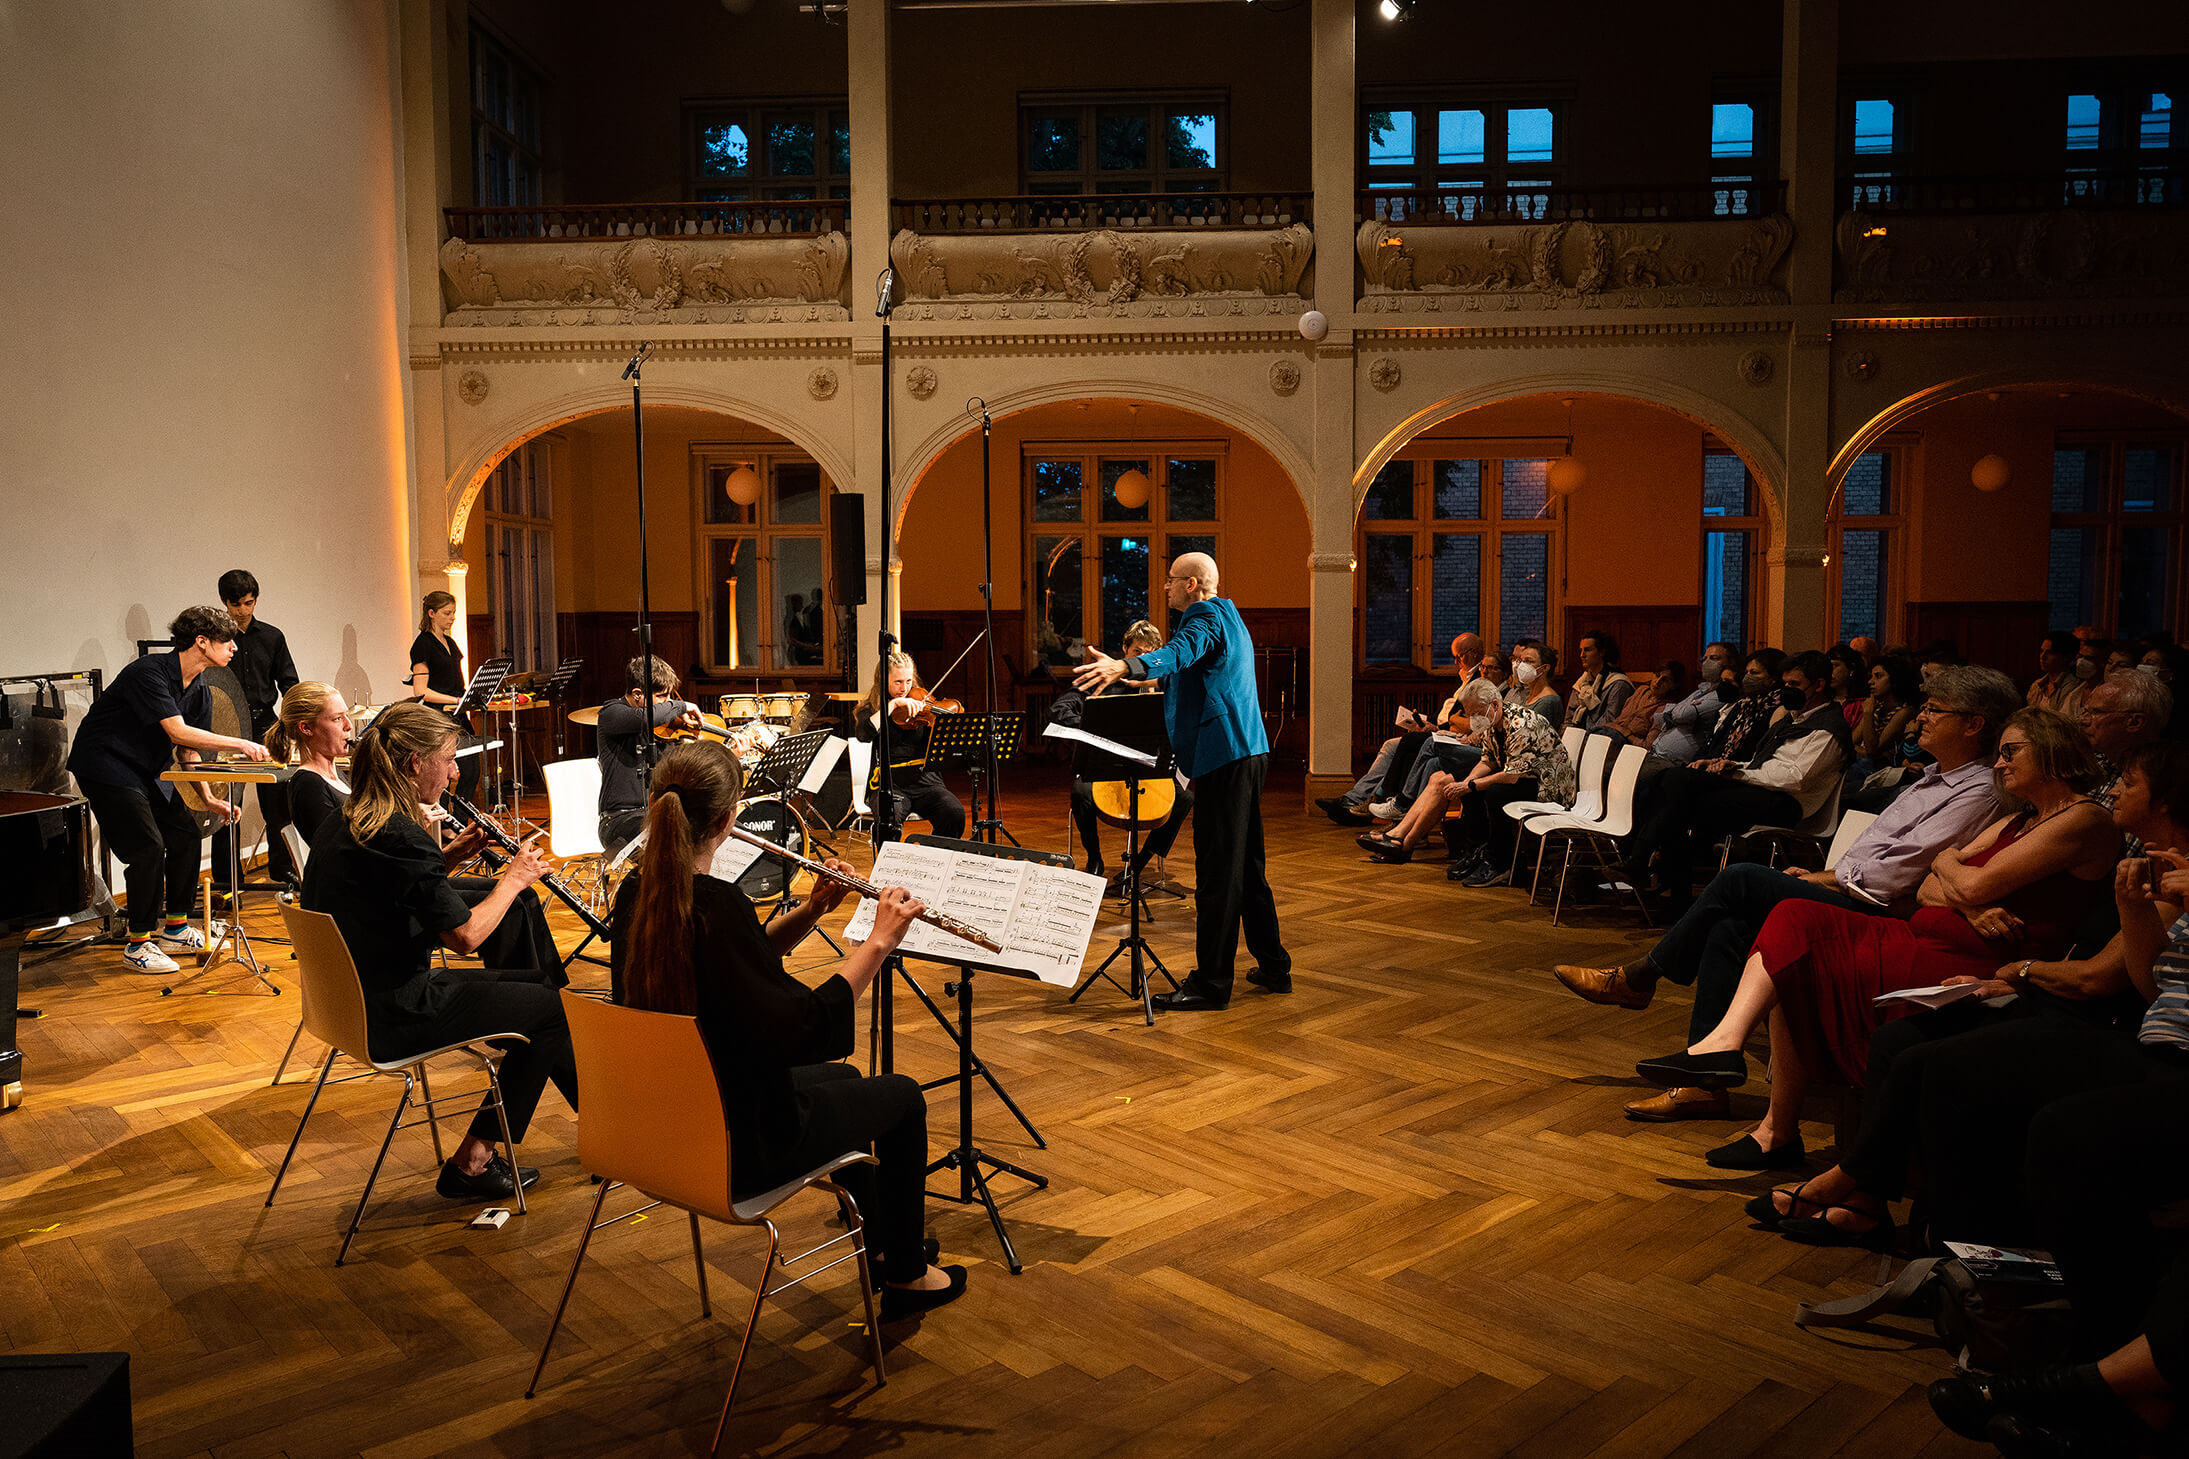 Das Bild zeigt in einer totale das junge Orchester und den Dirigenten im Konzertsaal. Auch die gebannten Zuschauer:innen sind zu sehen.